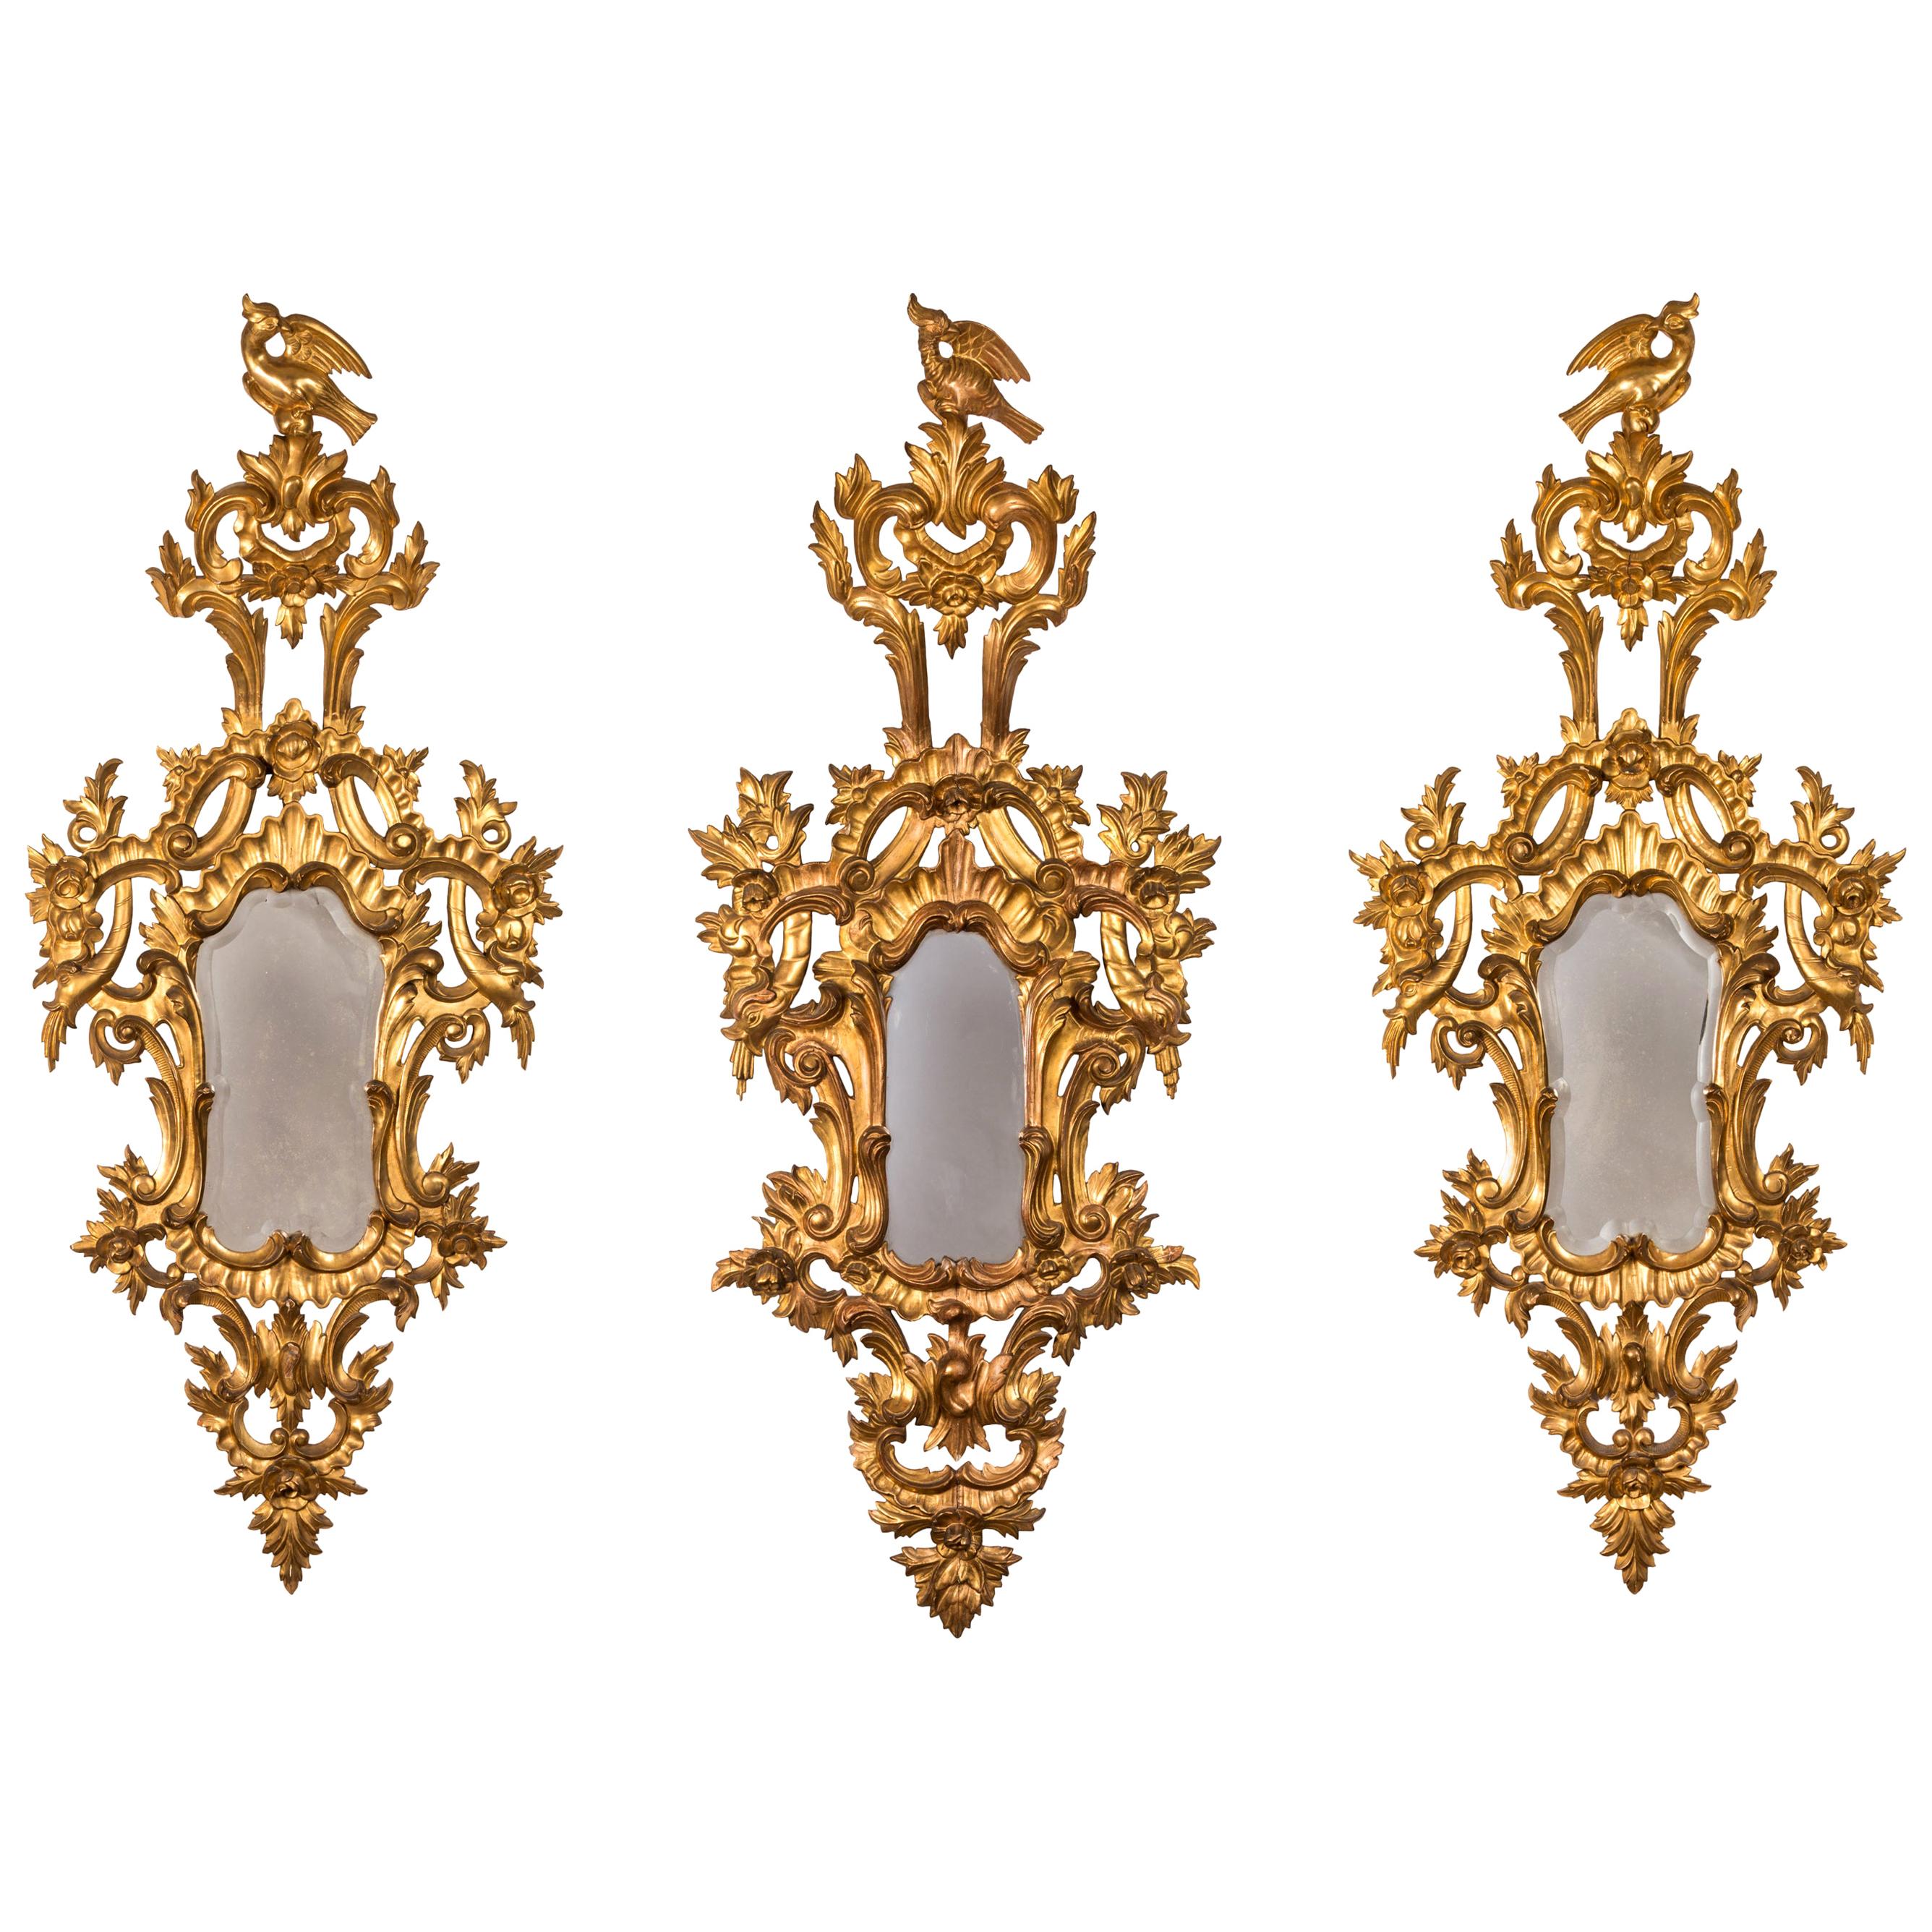 Ensemble de trois miroirs rococo français en bois doré sculpté du 18ème siècle